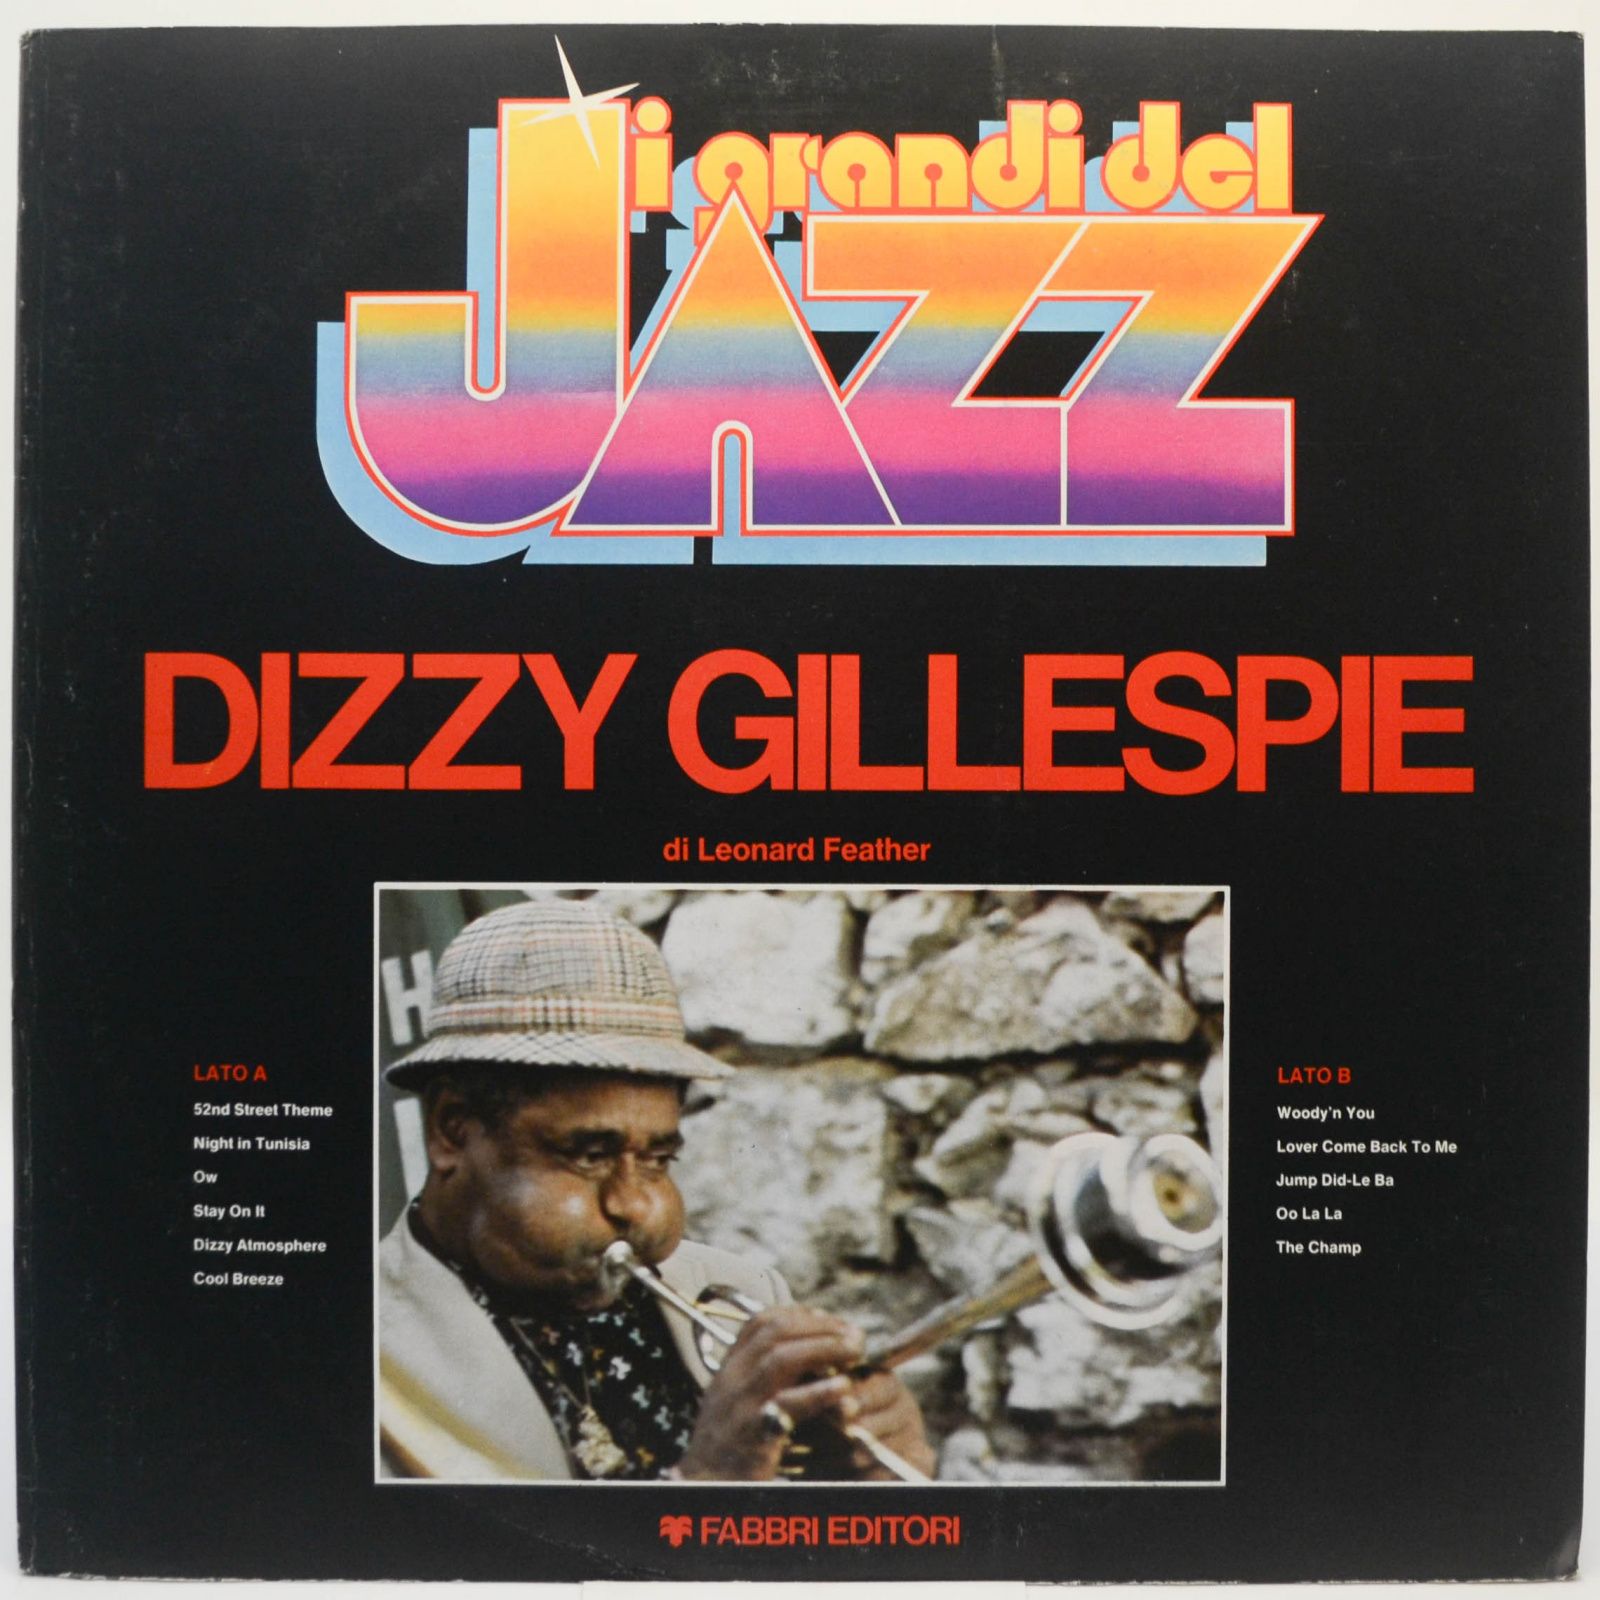 Dizzy Gillespie, 1979